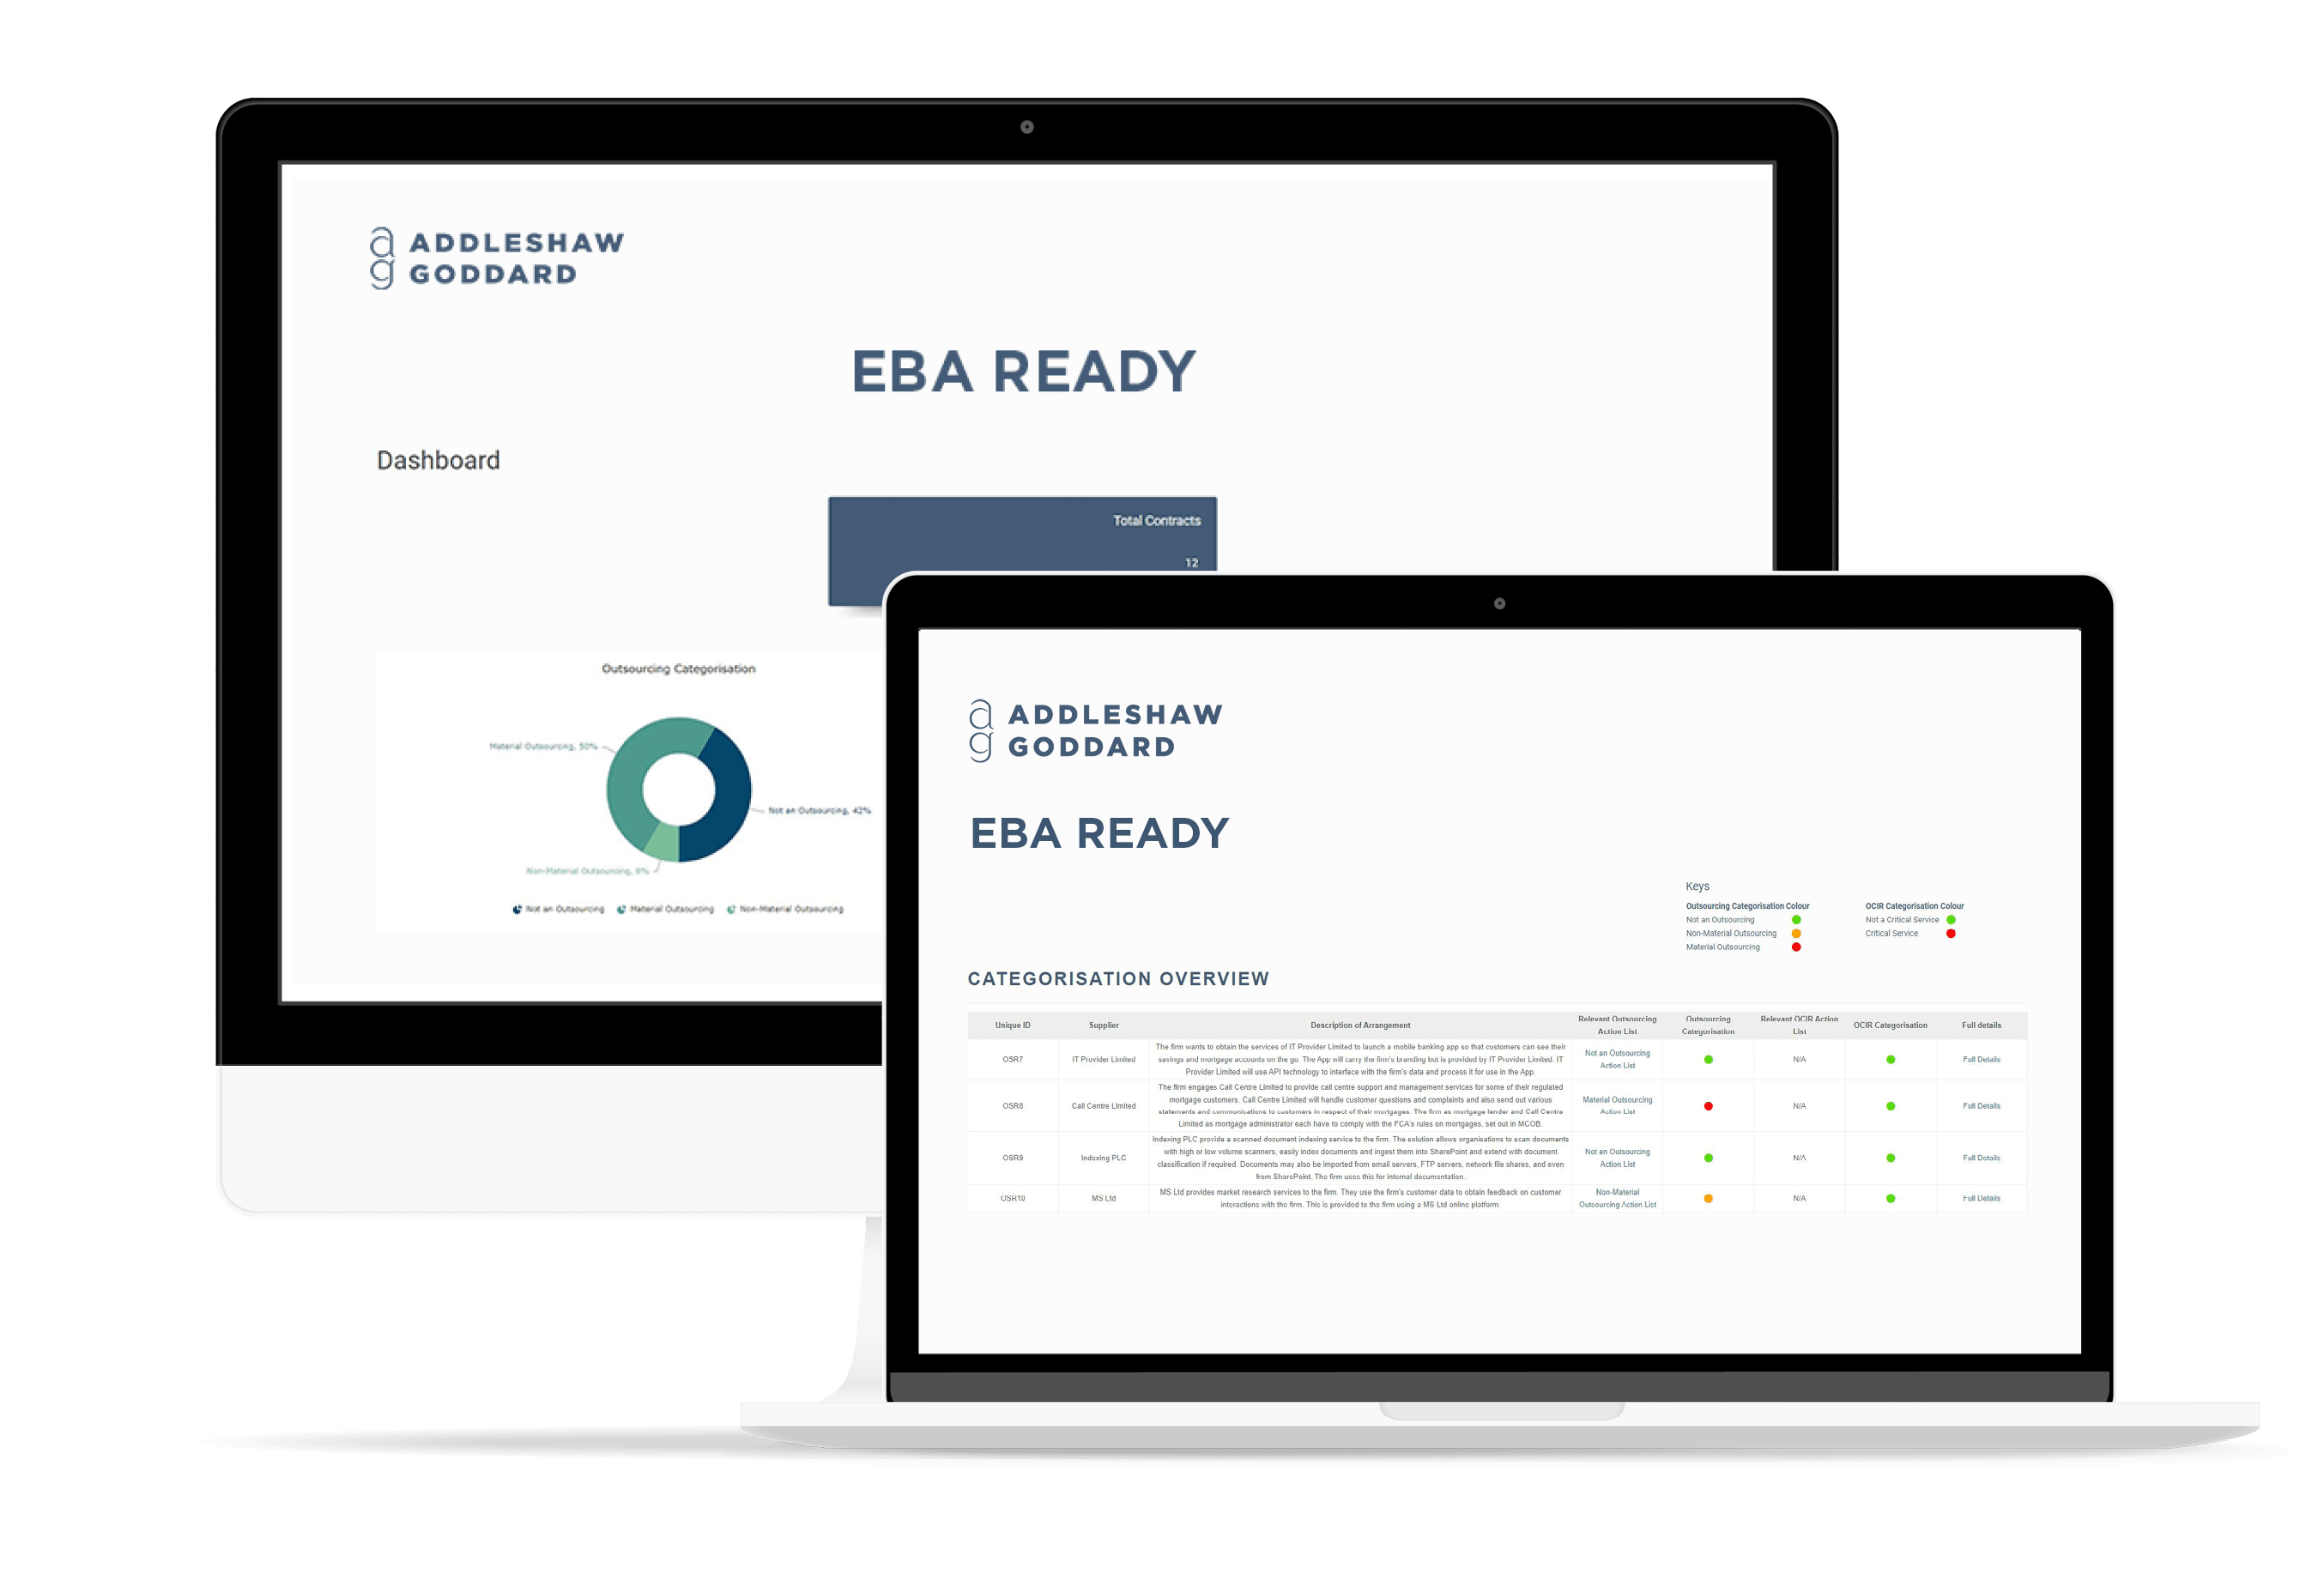 EBA Ready tool